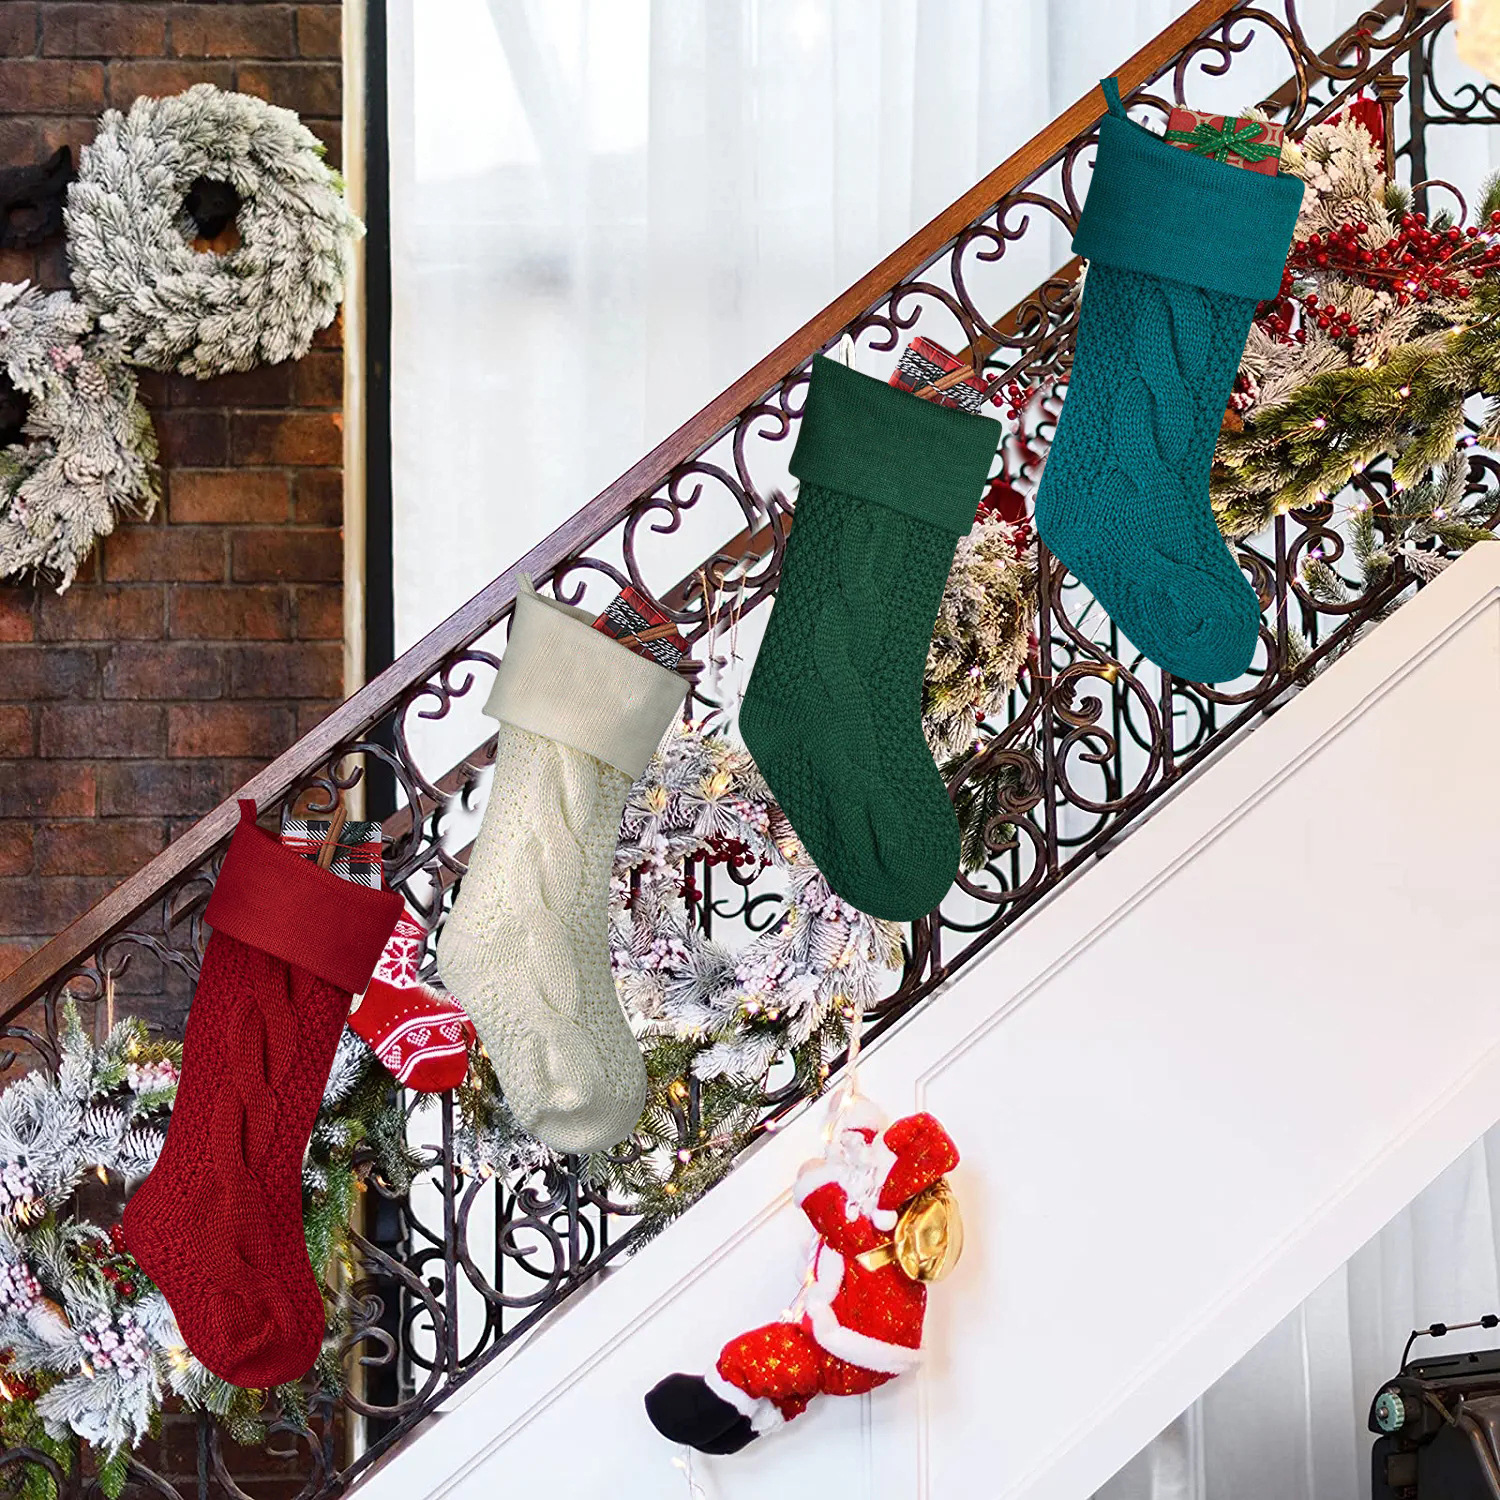 Calze natalizie lavorate a maglia intrecciata: decorazioni festive